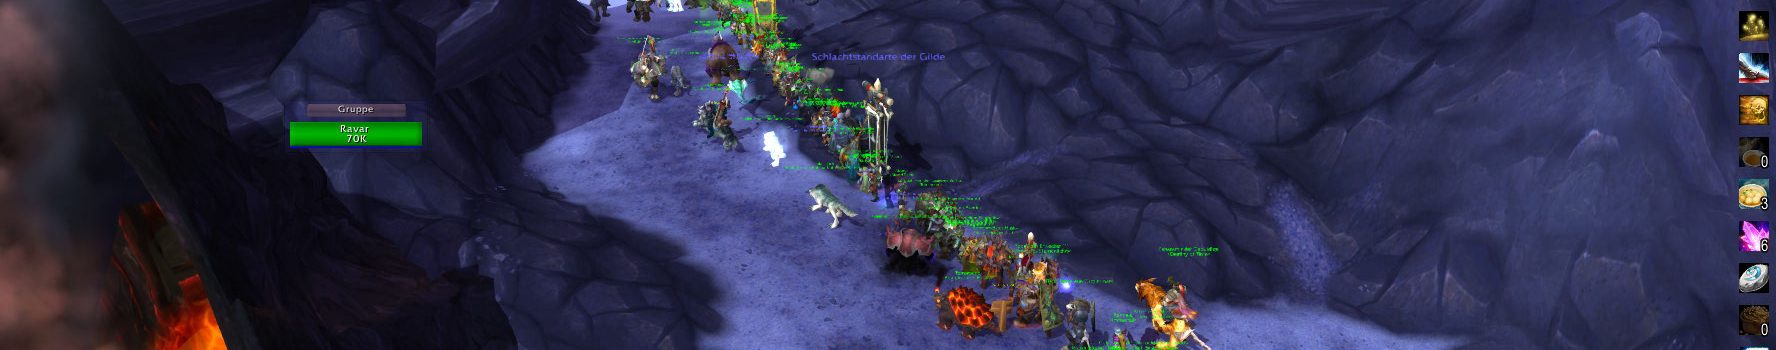 Sozialstudie in World of Warcraft